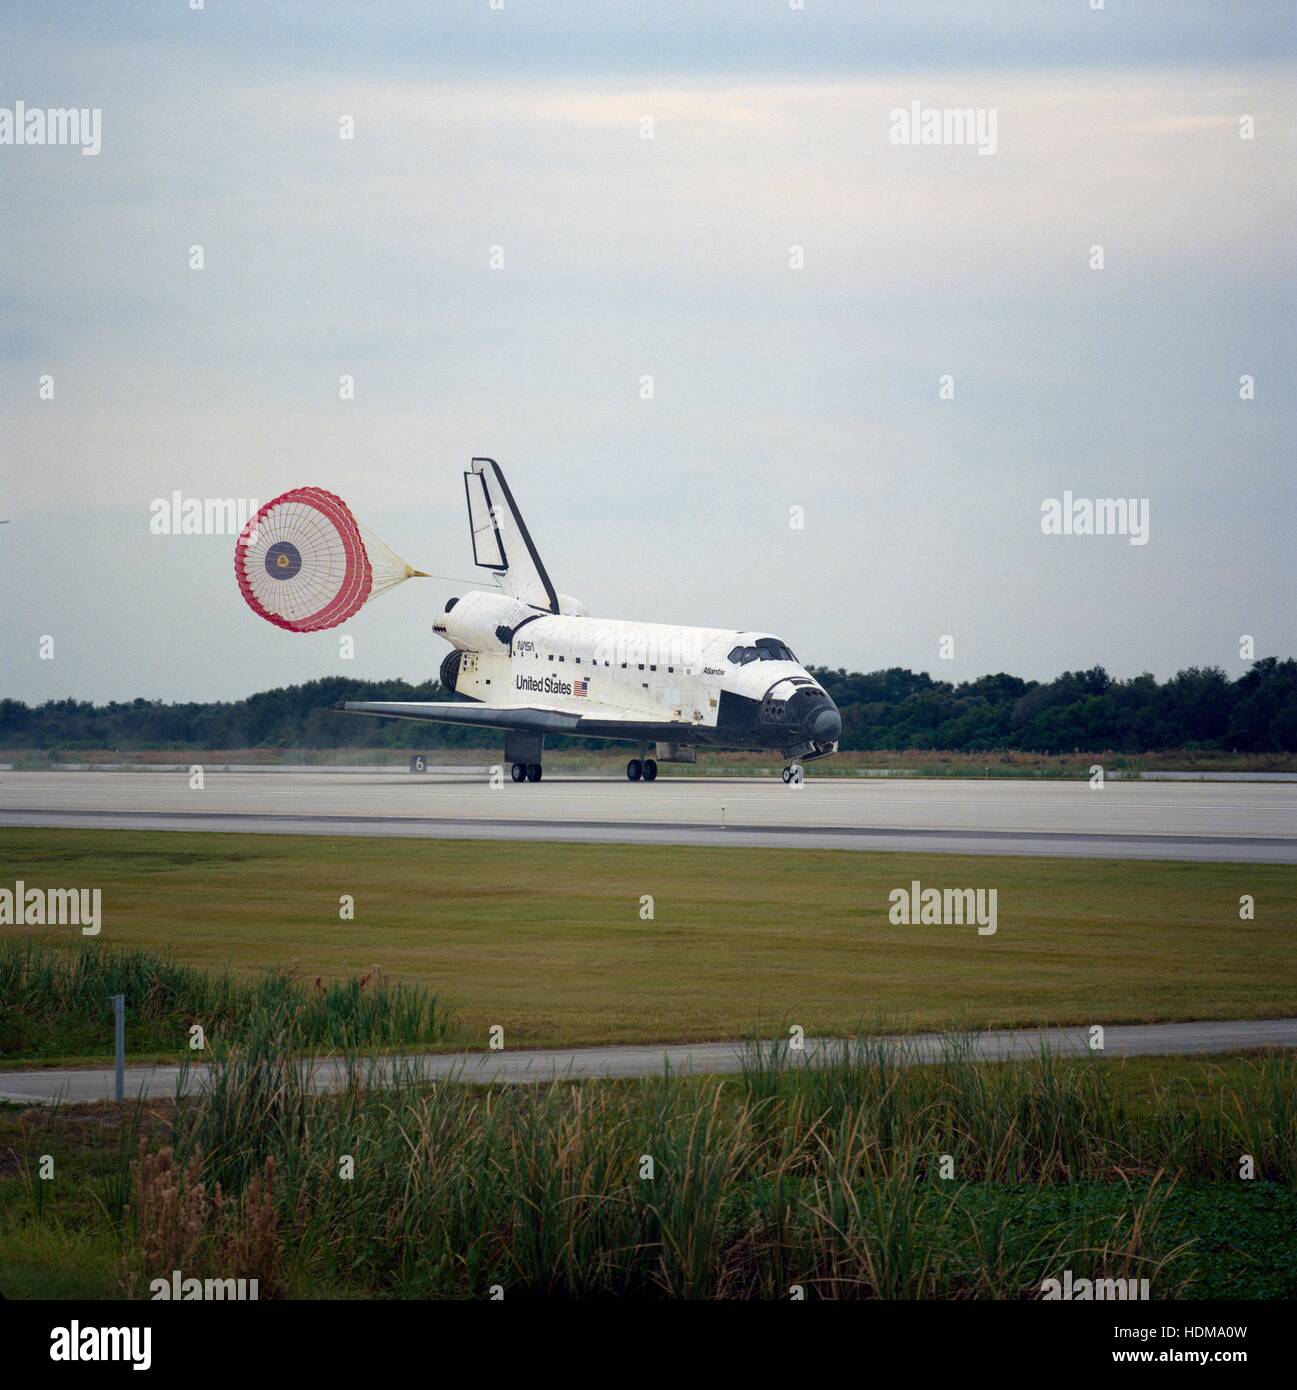 La NASA Space Shuttle Atlantis atterra sulla pista presso il Kennedy Space Center Shuttle Landing Facility alla fine della sua STS-74 missione Novembre 20, 1995 in Merritt Island, Florida. Foto Stock